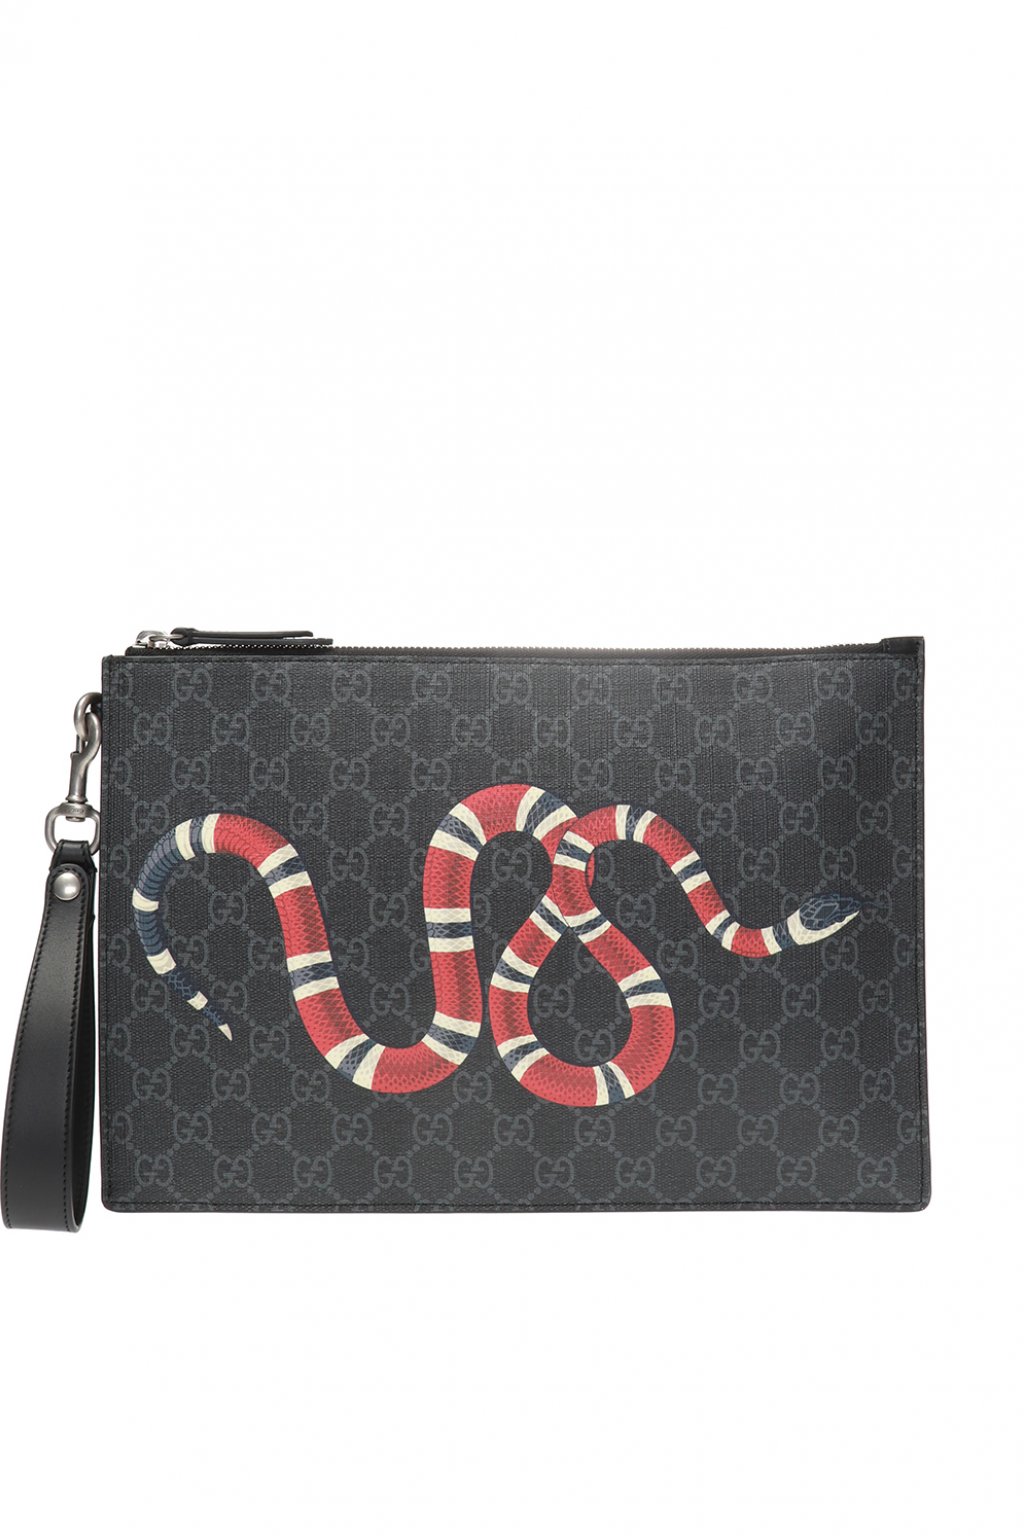 gucci snake purse